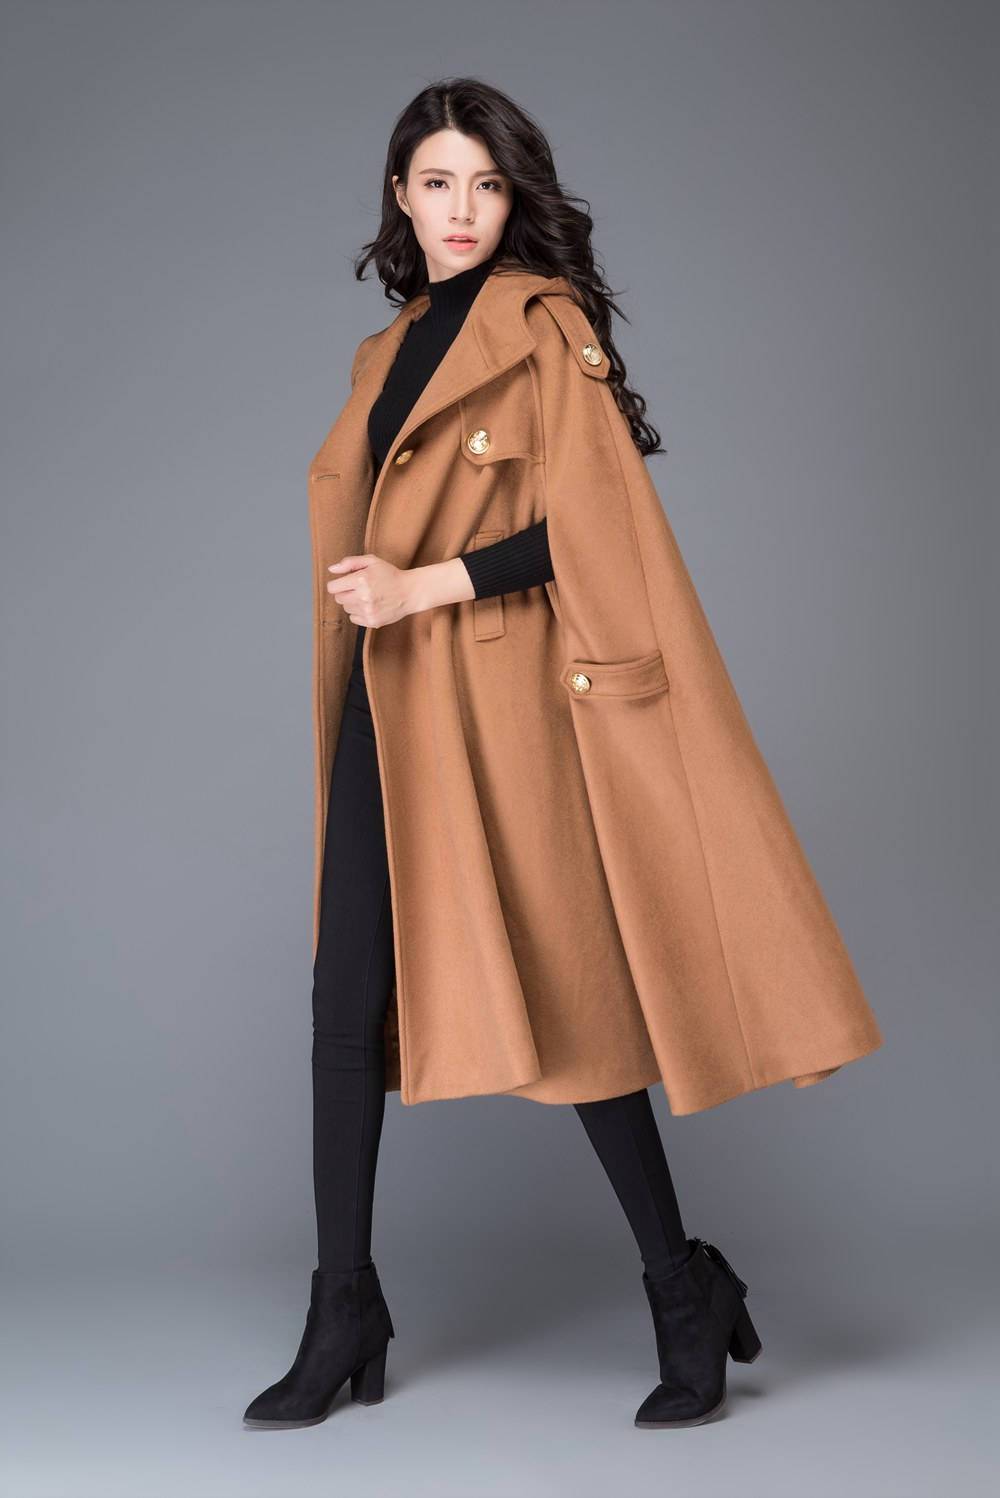 Plus Size Coat, Long Coat, Wool Coat Women, Maxi Coat, Plus Size